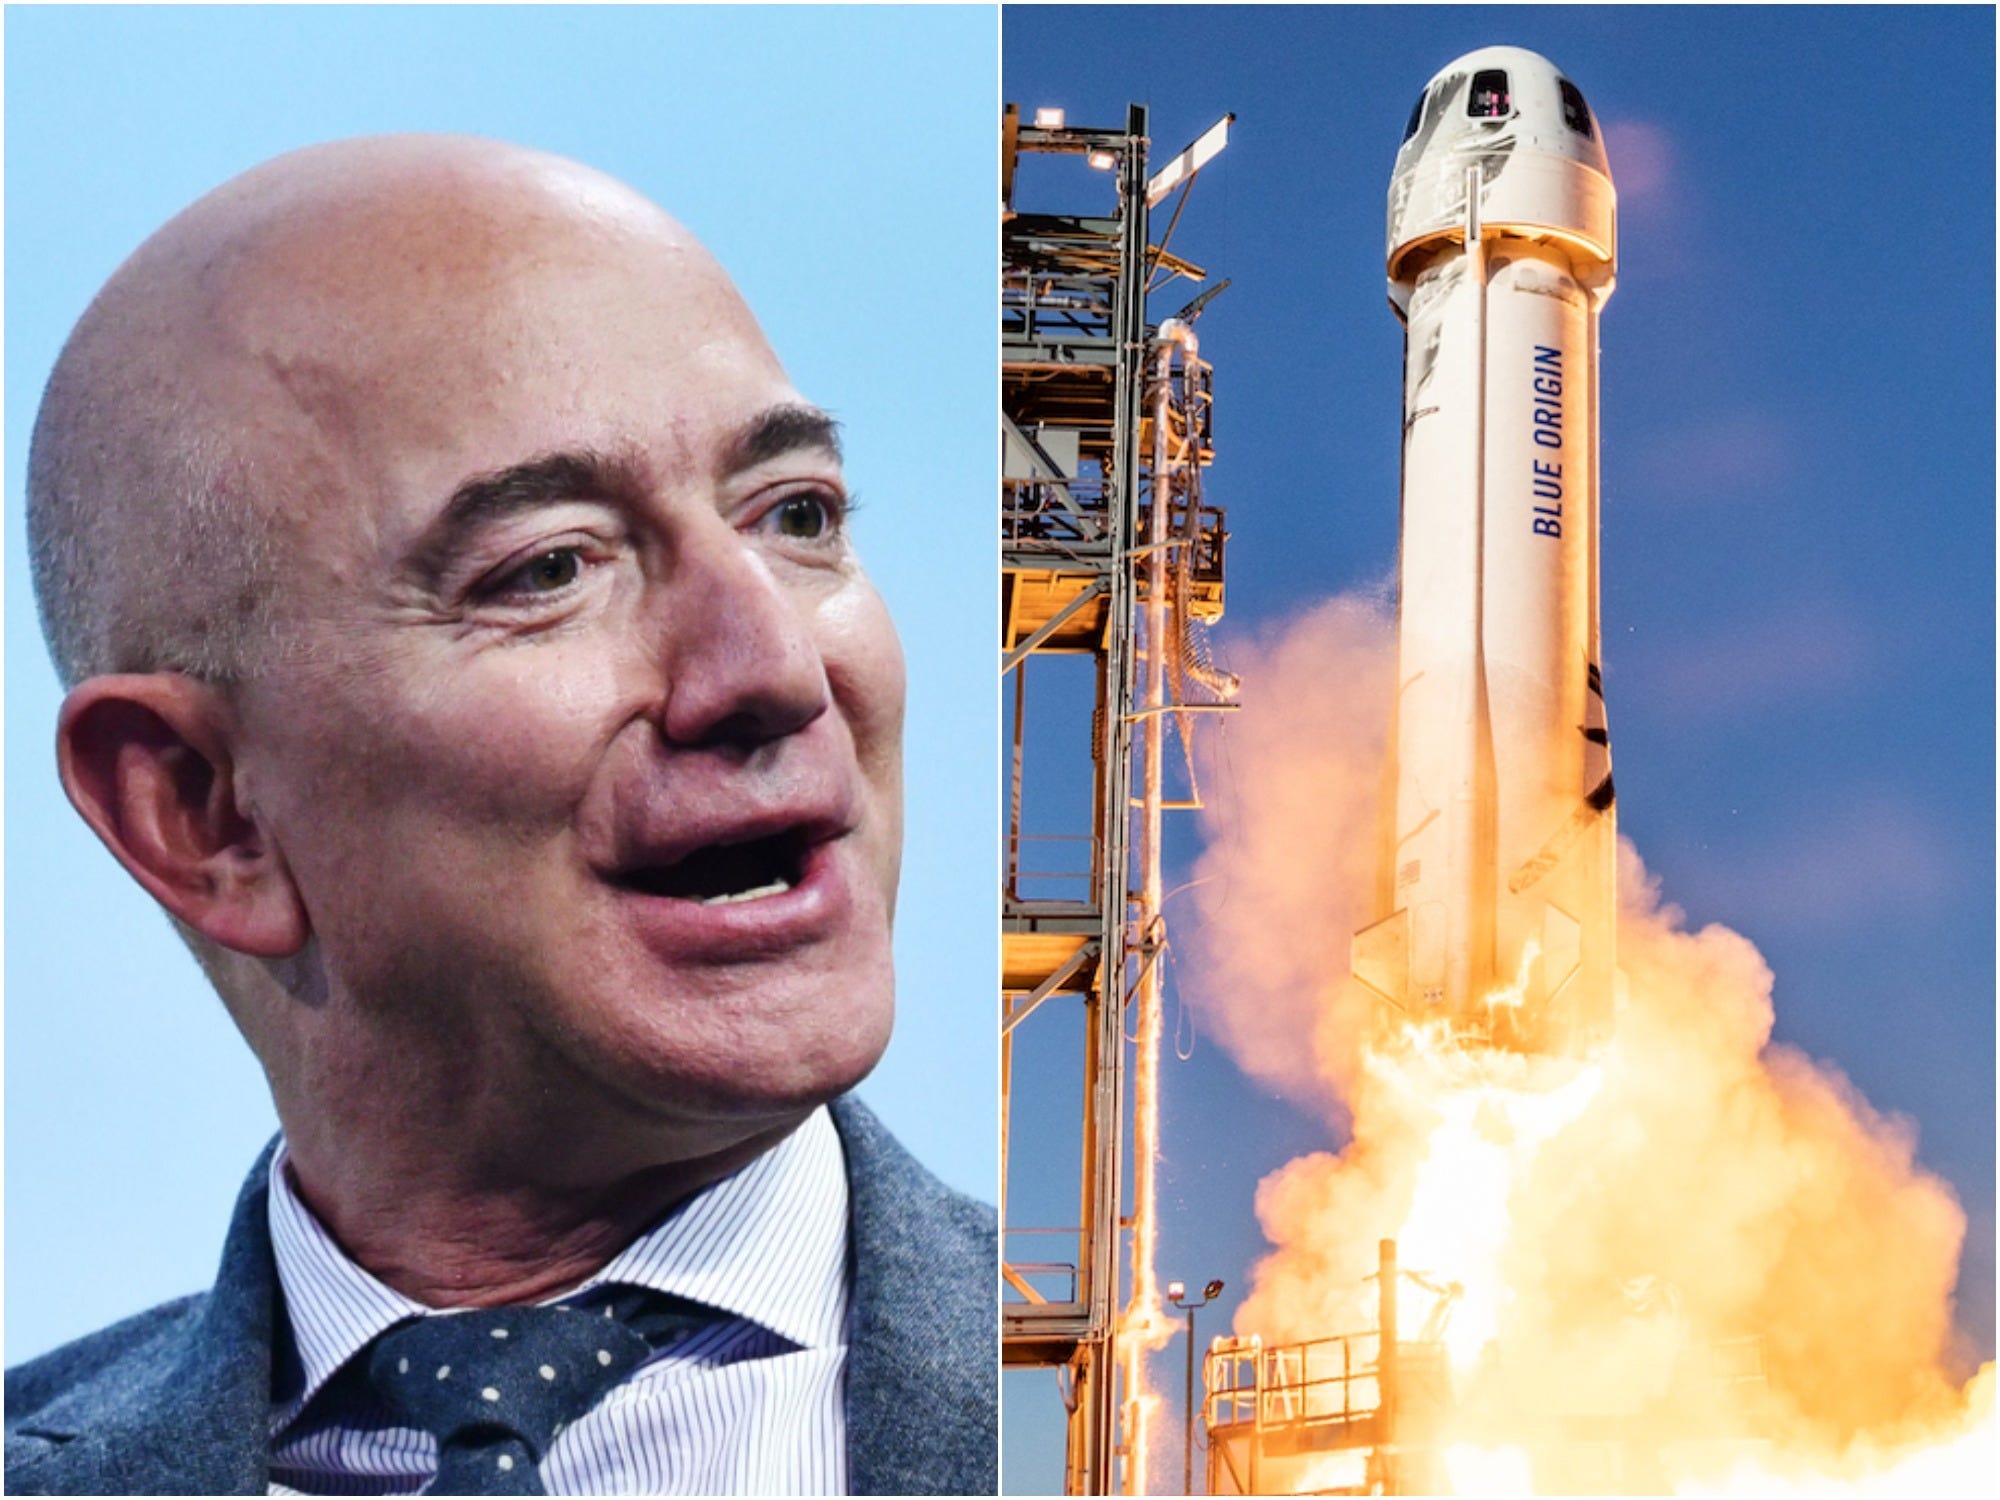 Jeff Bezos is seen speaking beside a photo of Blue Origin's New Shepard rocket lifting off.